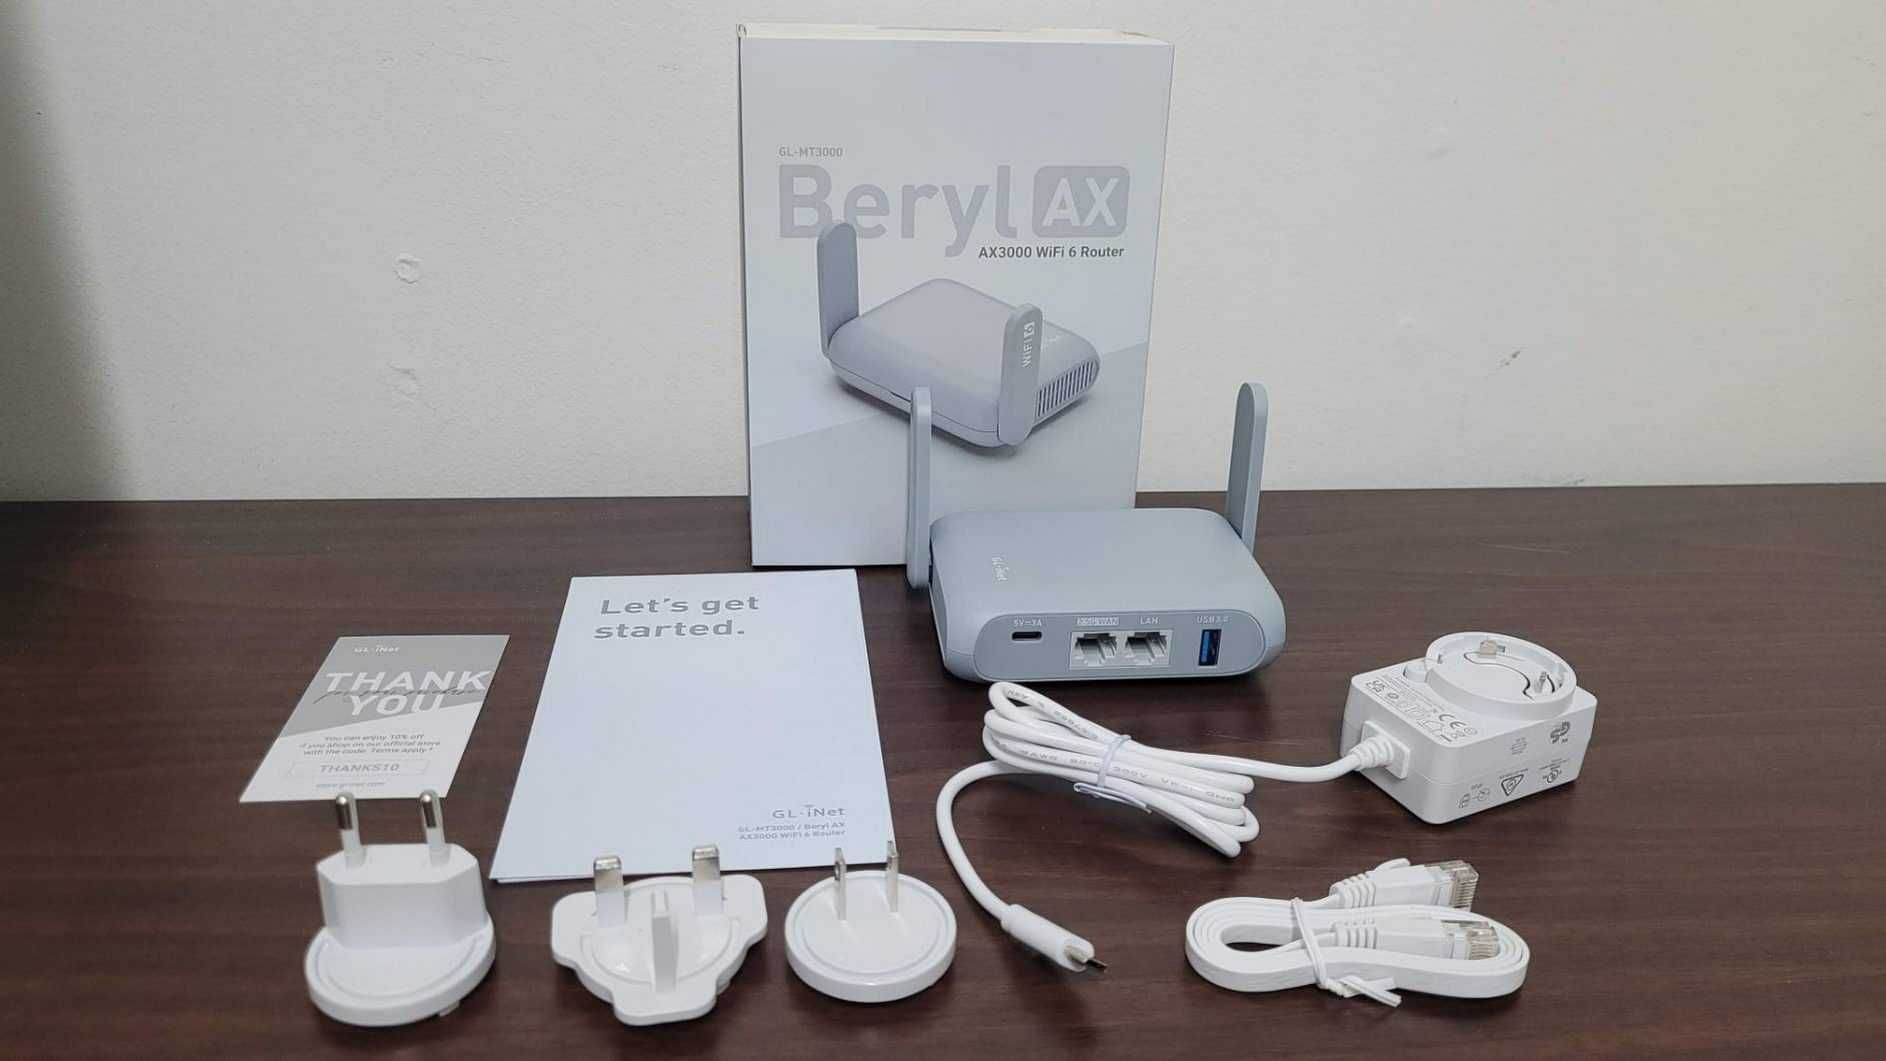 GL.iNet Beryl AX (GL-MT3000) Wi-Fi 6 Роутер OpenWrt, USB, VPN, AdGuard